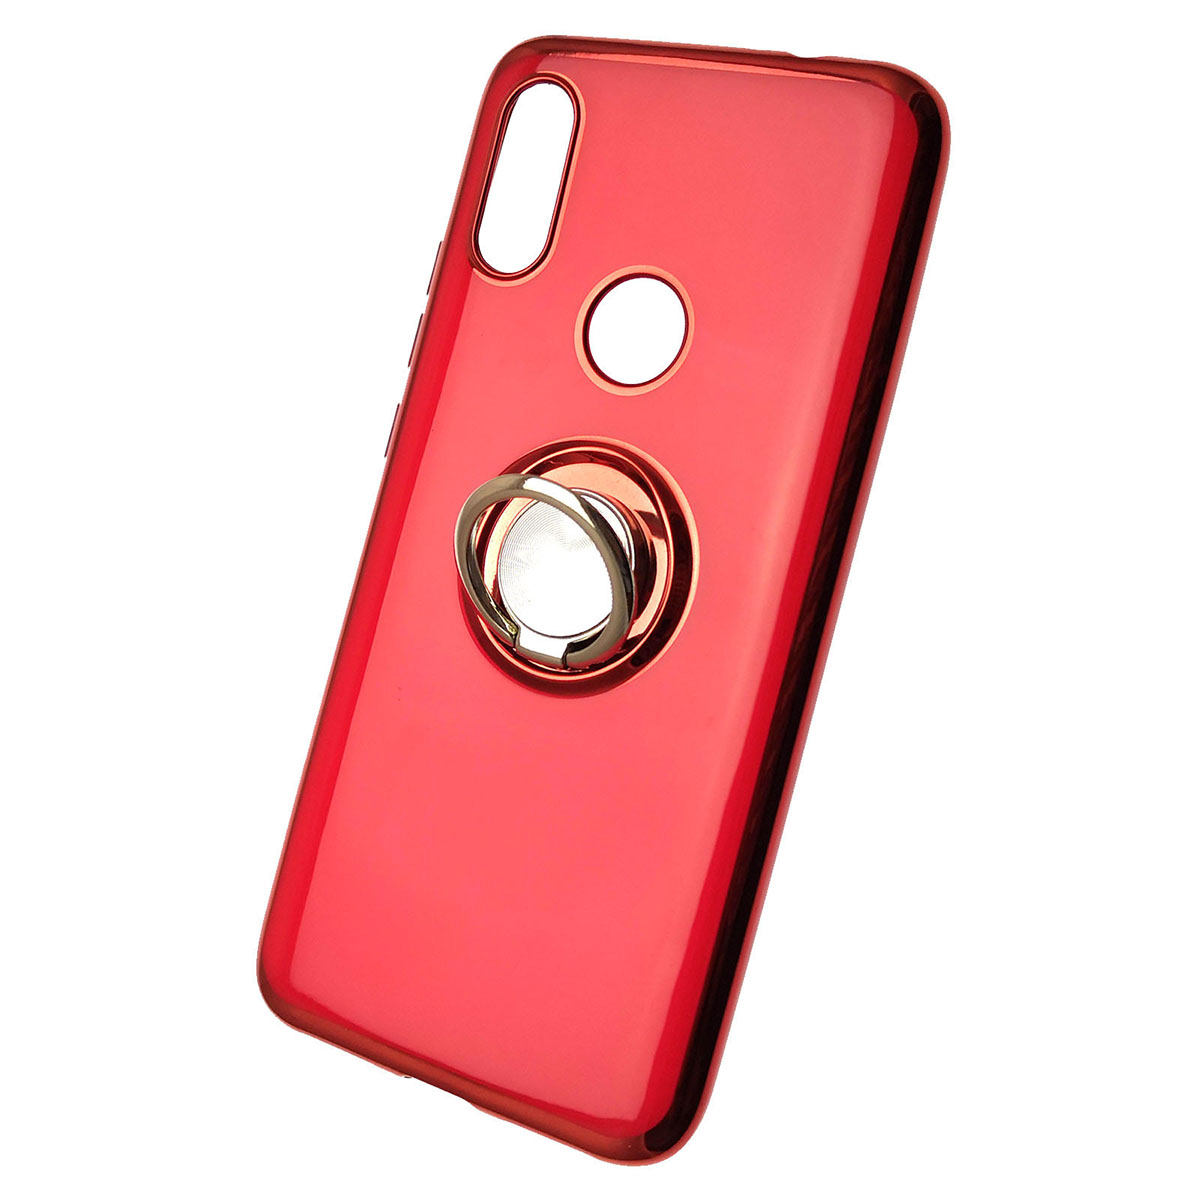 Чехол накладка для XIAOMI Redmi 7, силикон, кольцо держатель, цвет красный.